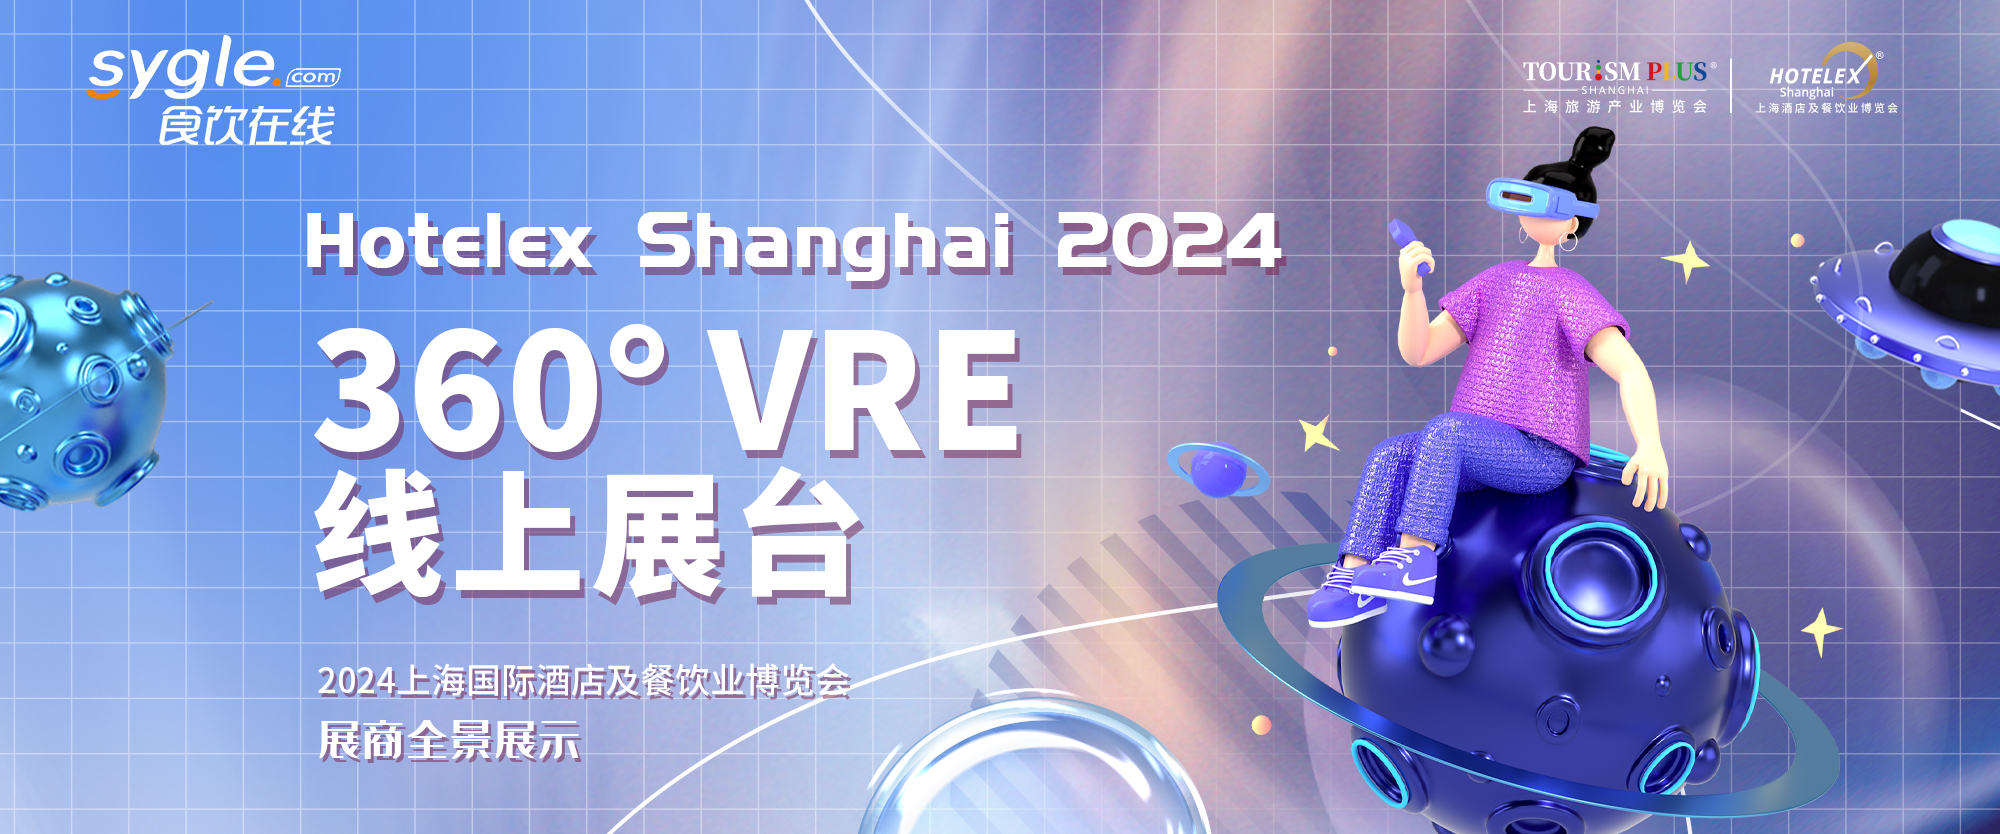 2024上海国际酒店及餐饮业博览会展商全景展示